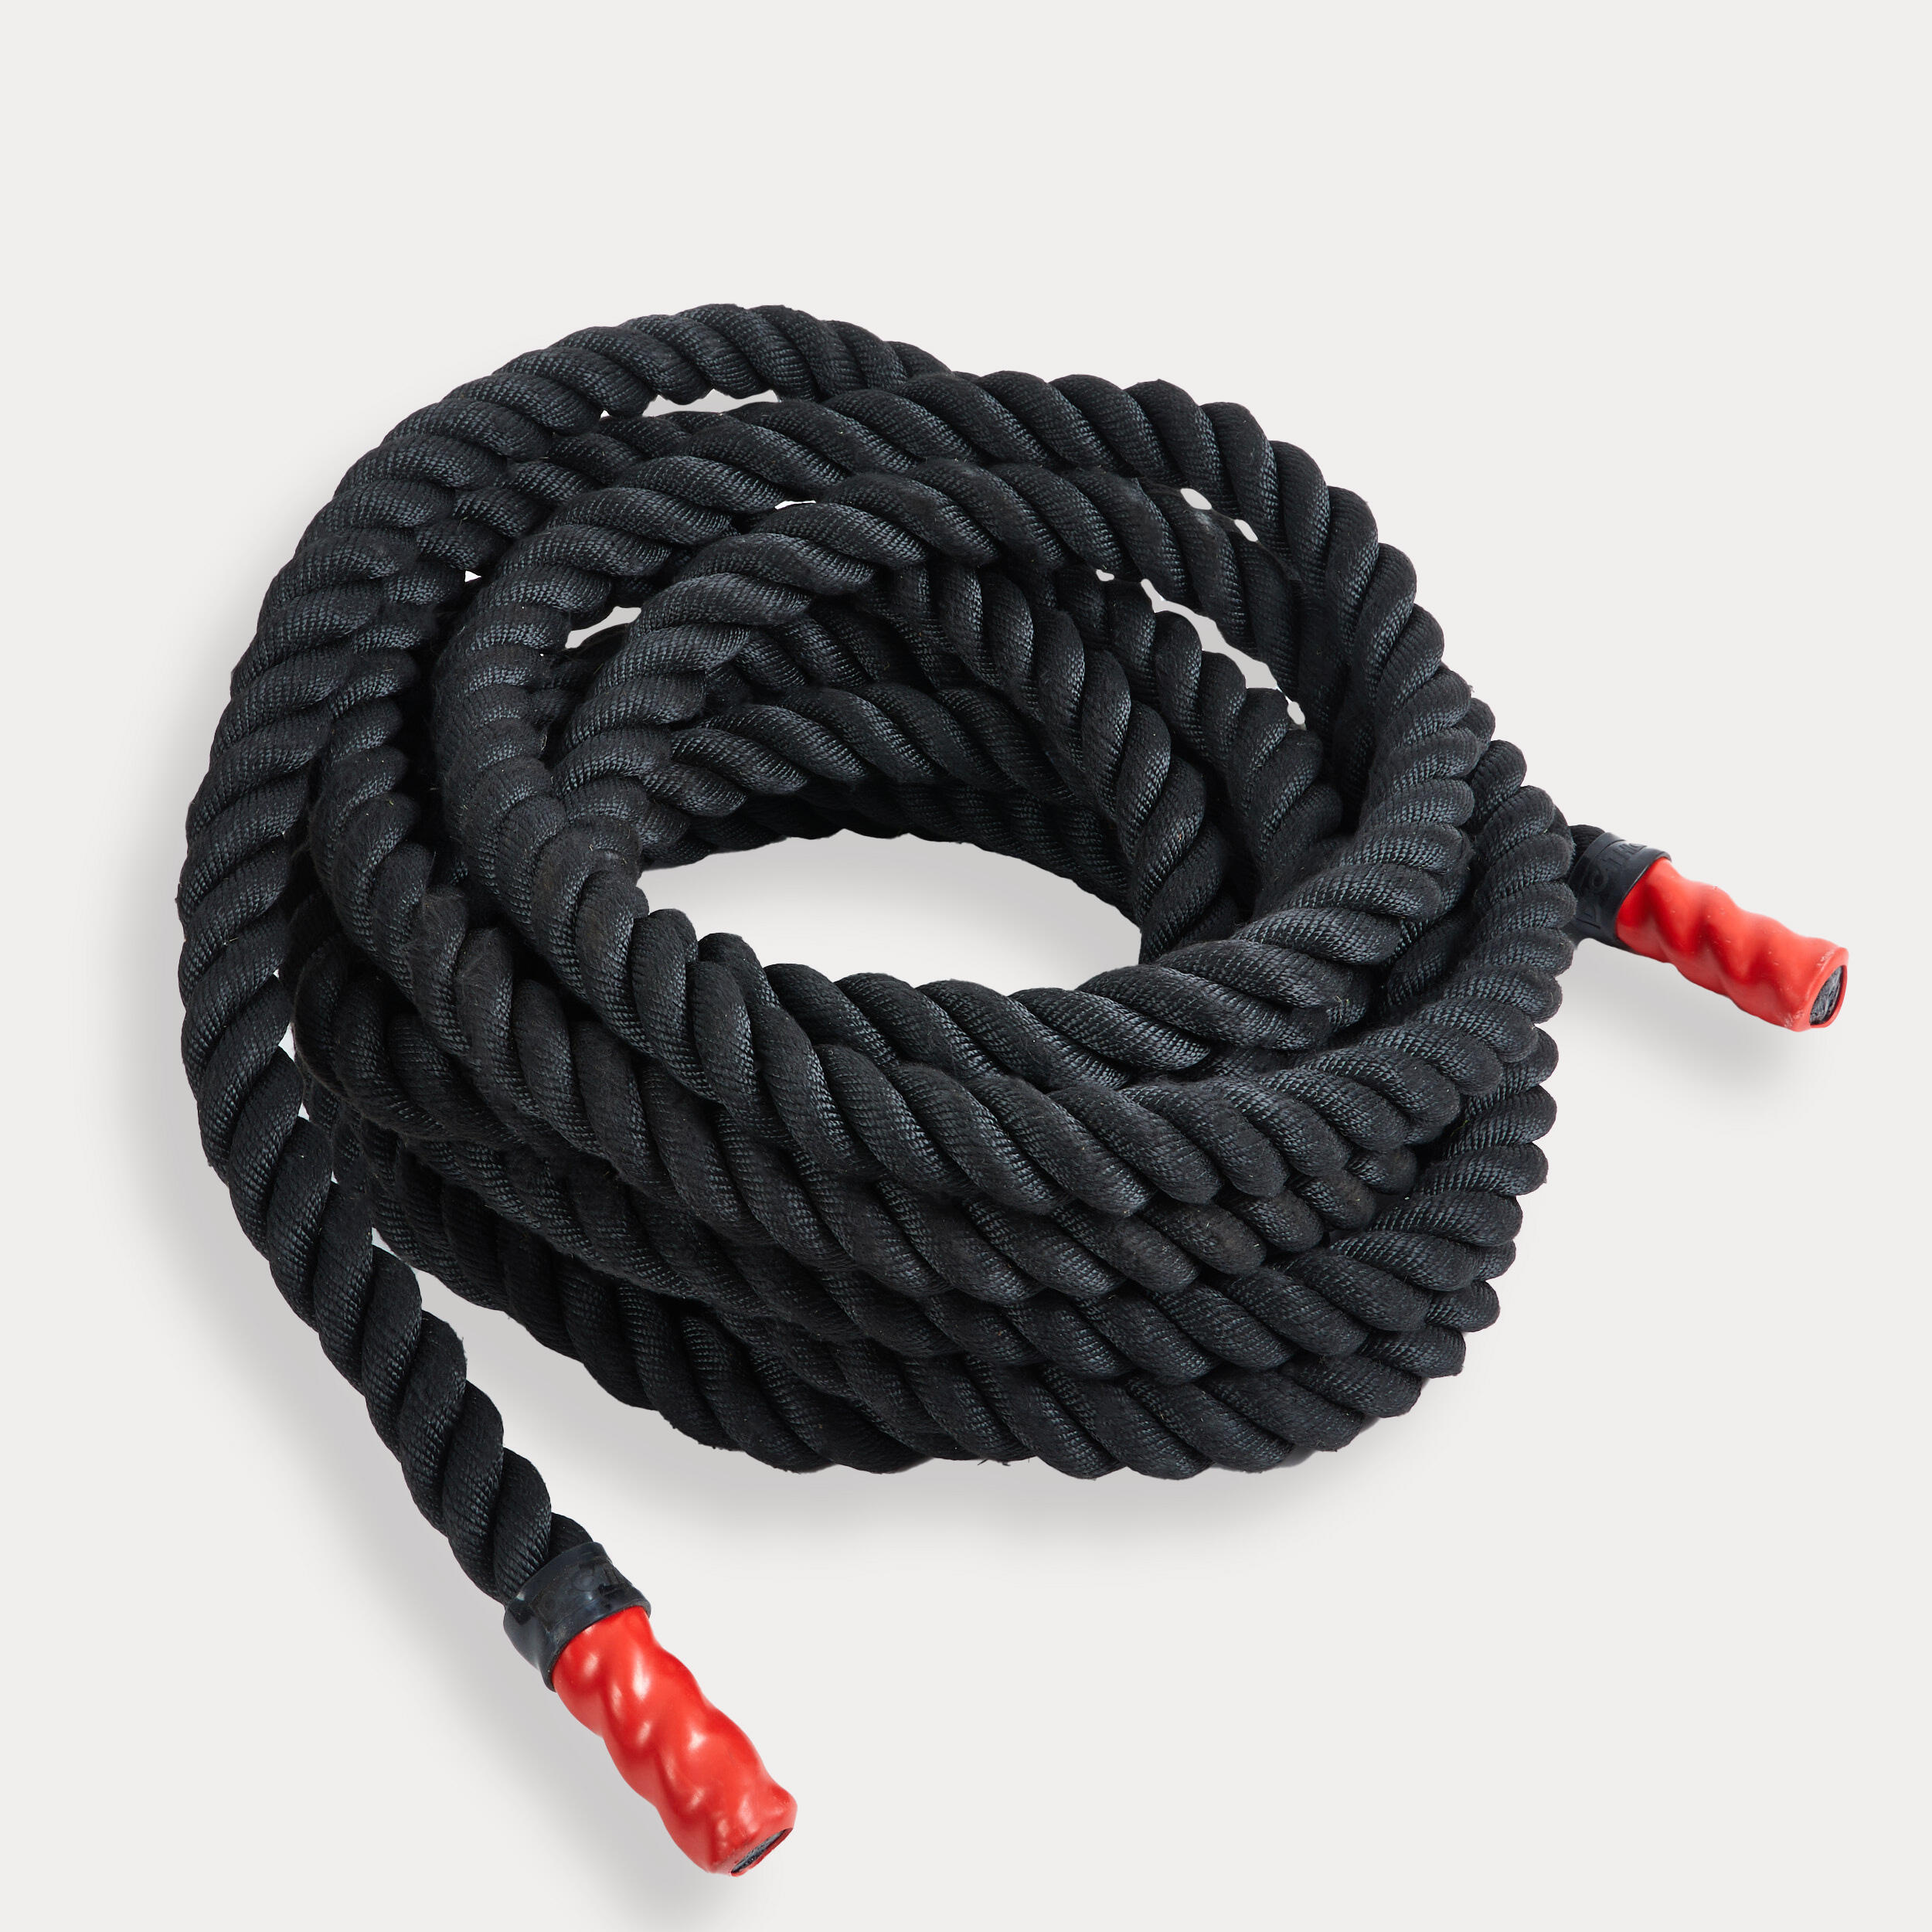 Corde ondulatoire d'entraînement 12 m - Noir, Rouge - Corength